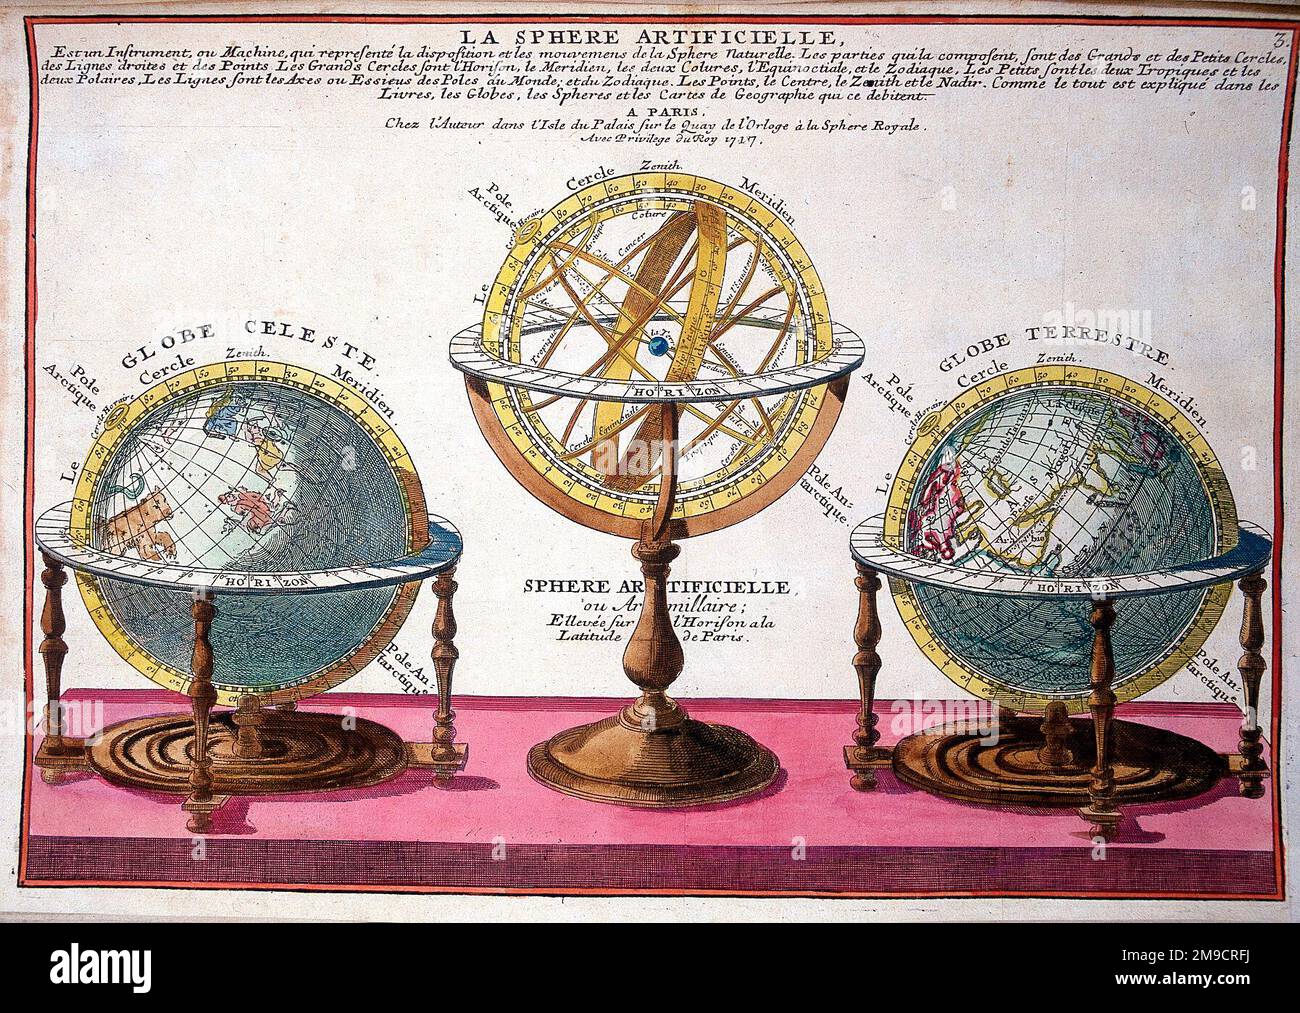 La Sphere Artificielle - sfere terrestri, celesti e armillari, globi celesti e terrestri e Astrolabe sferiche Foto Stock